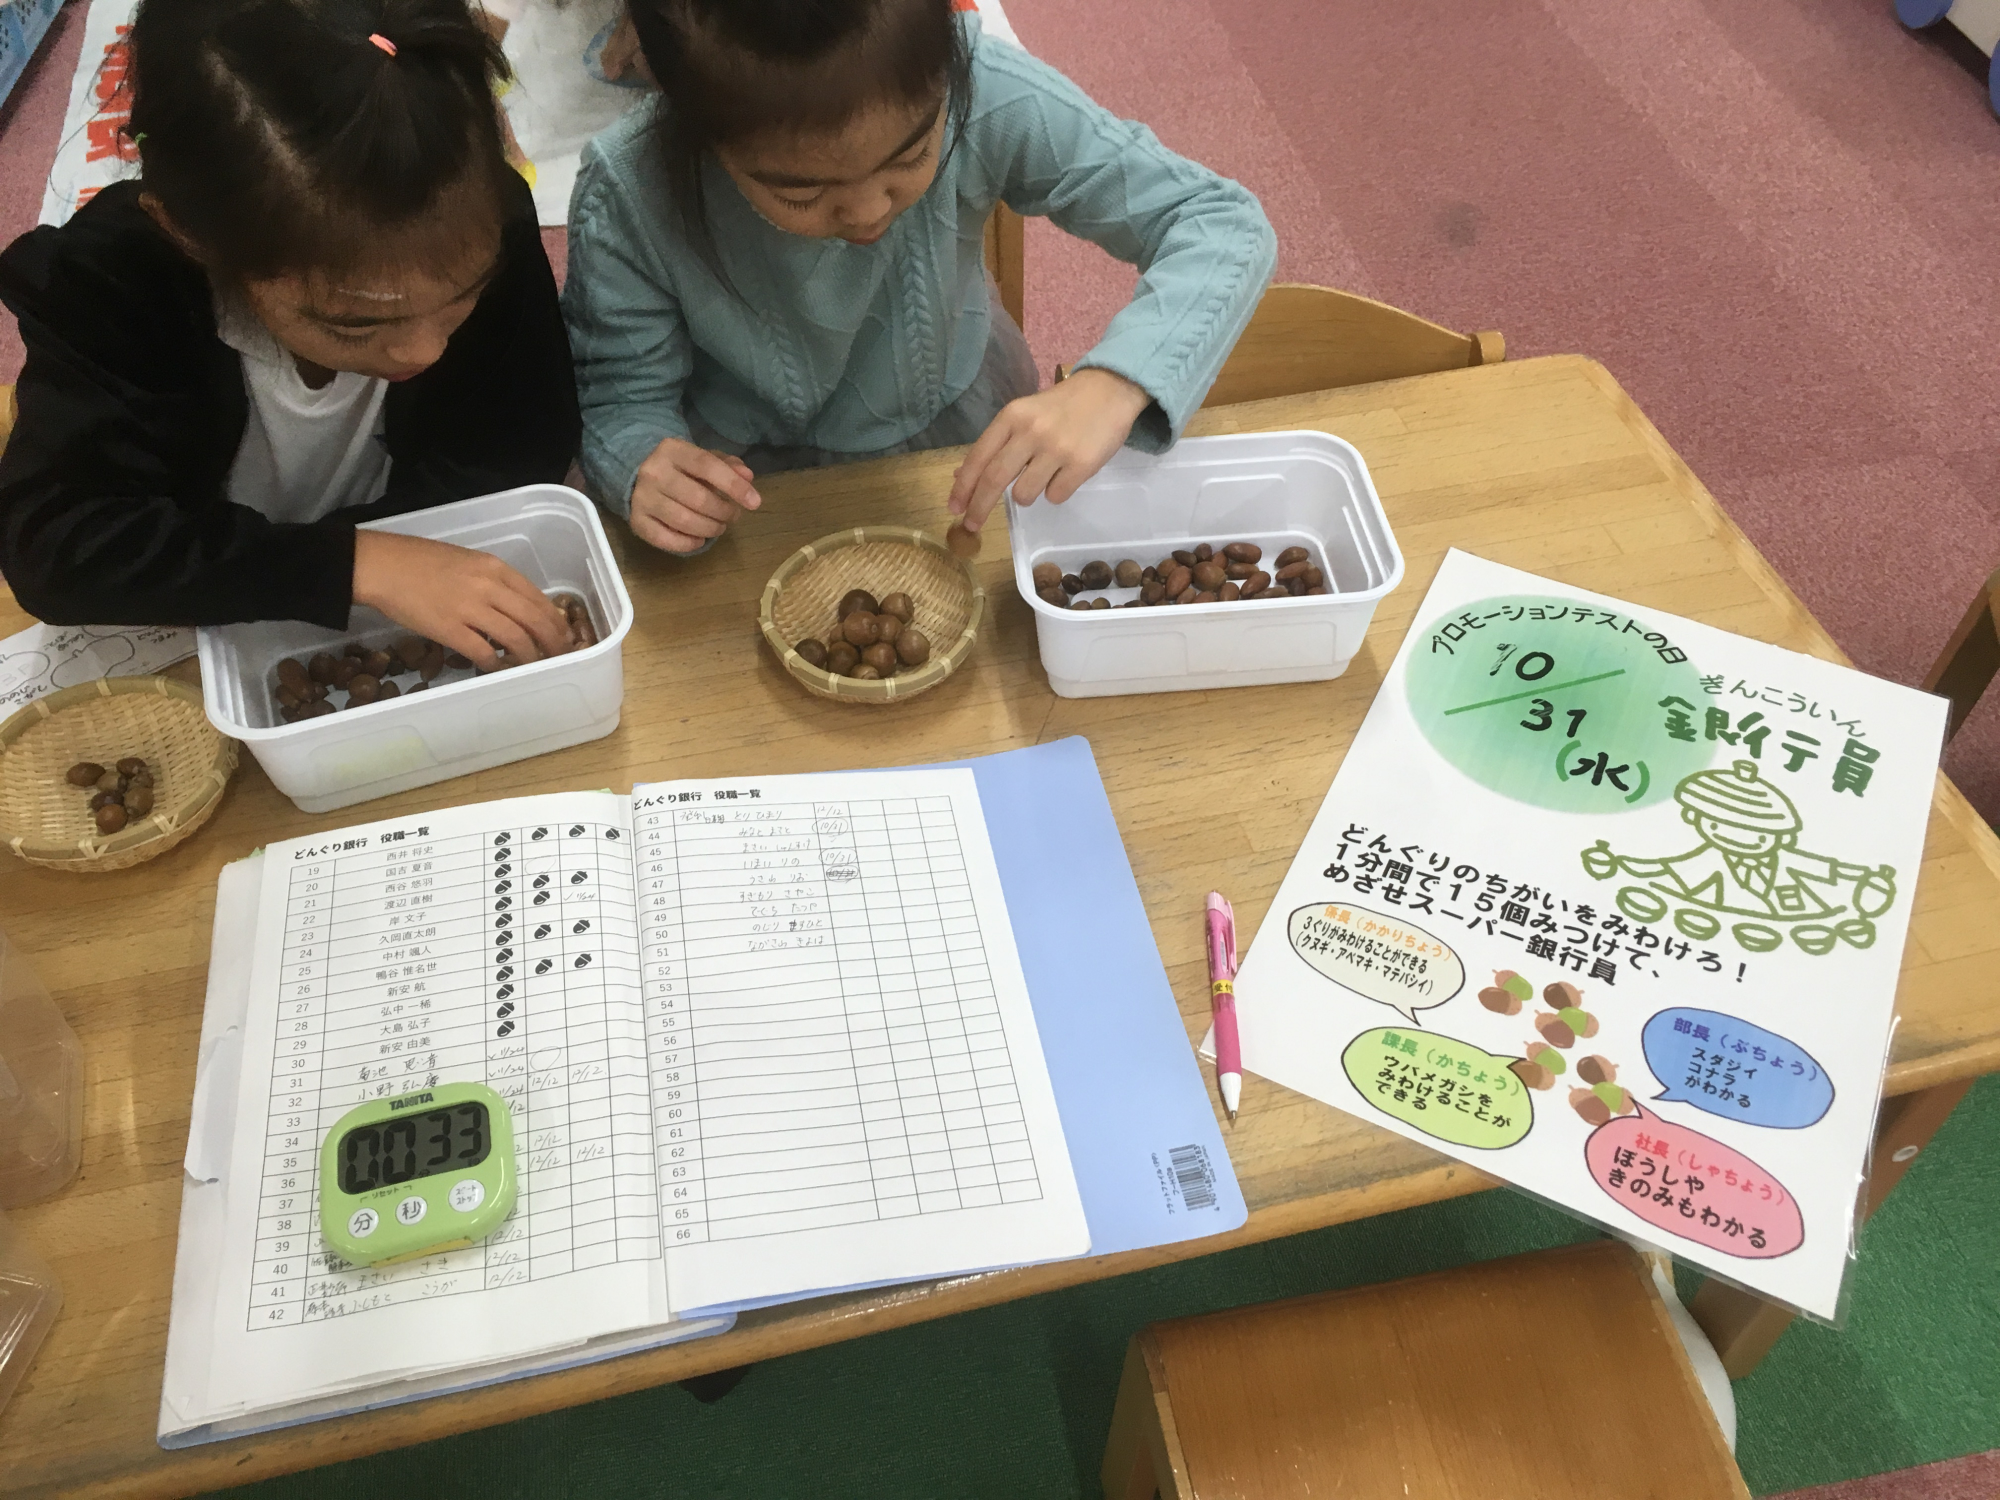 神戸市立六甲道児童館「どんぐりマーケット第一回銀行員テスト」